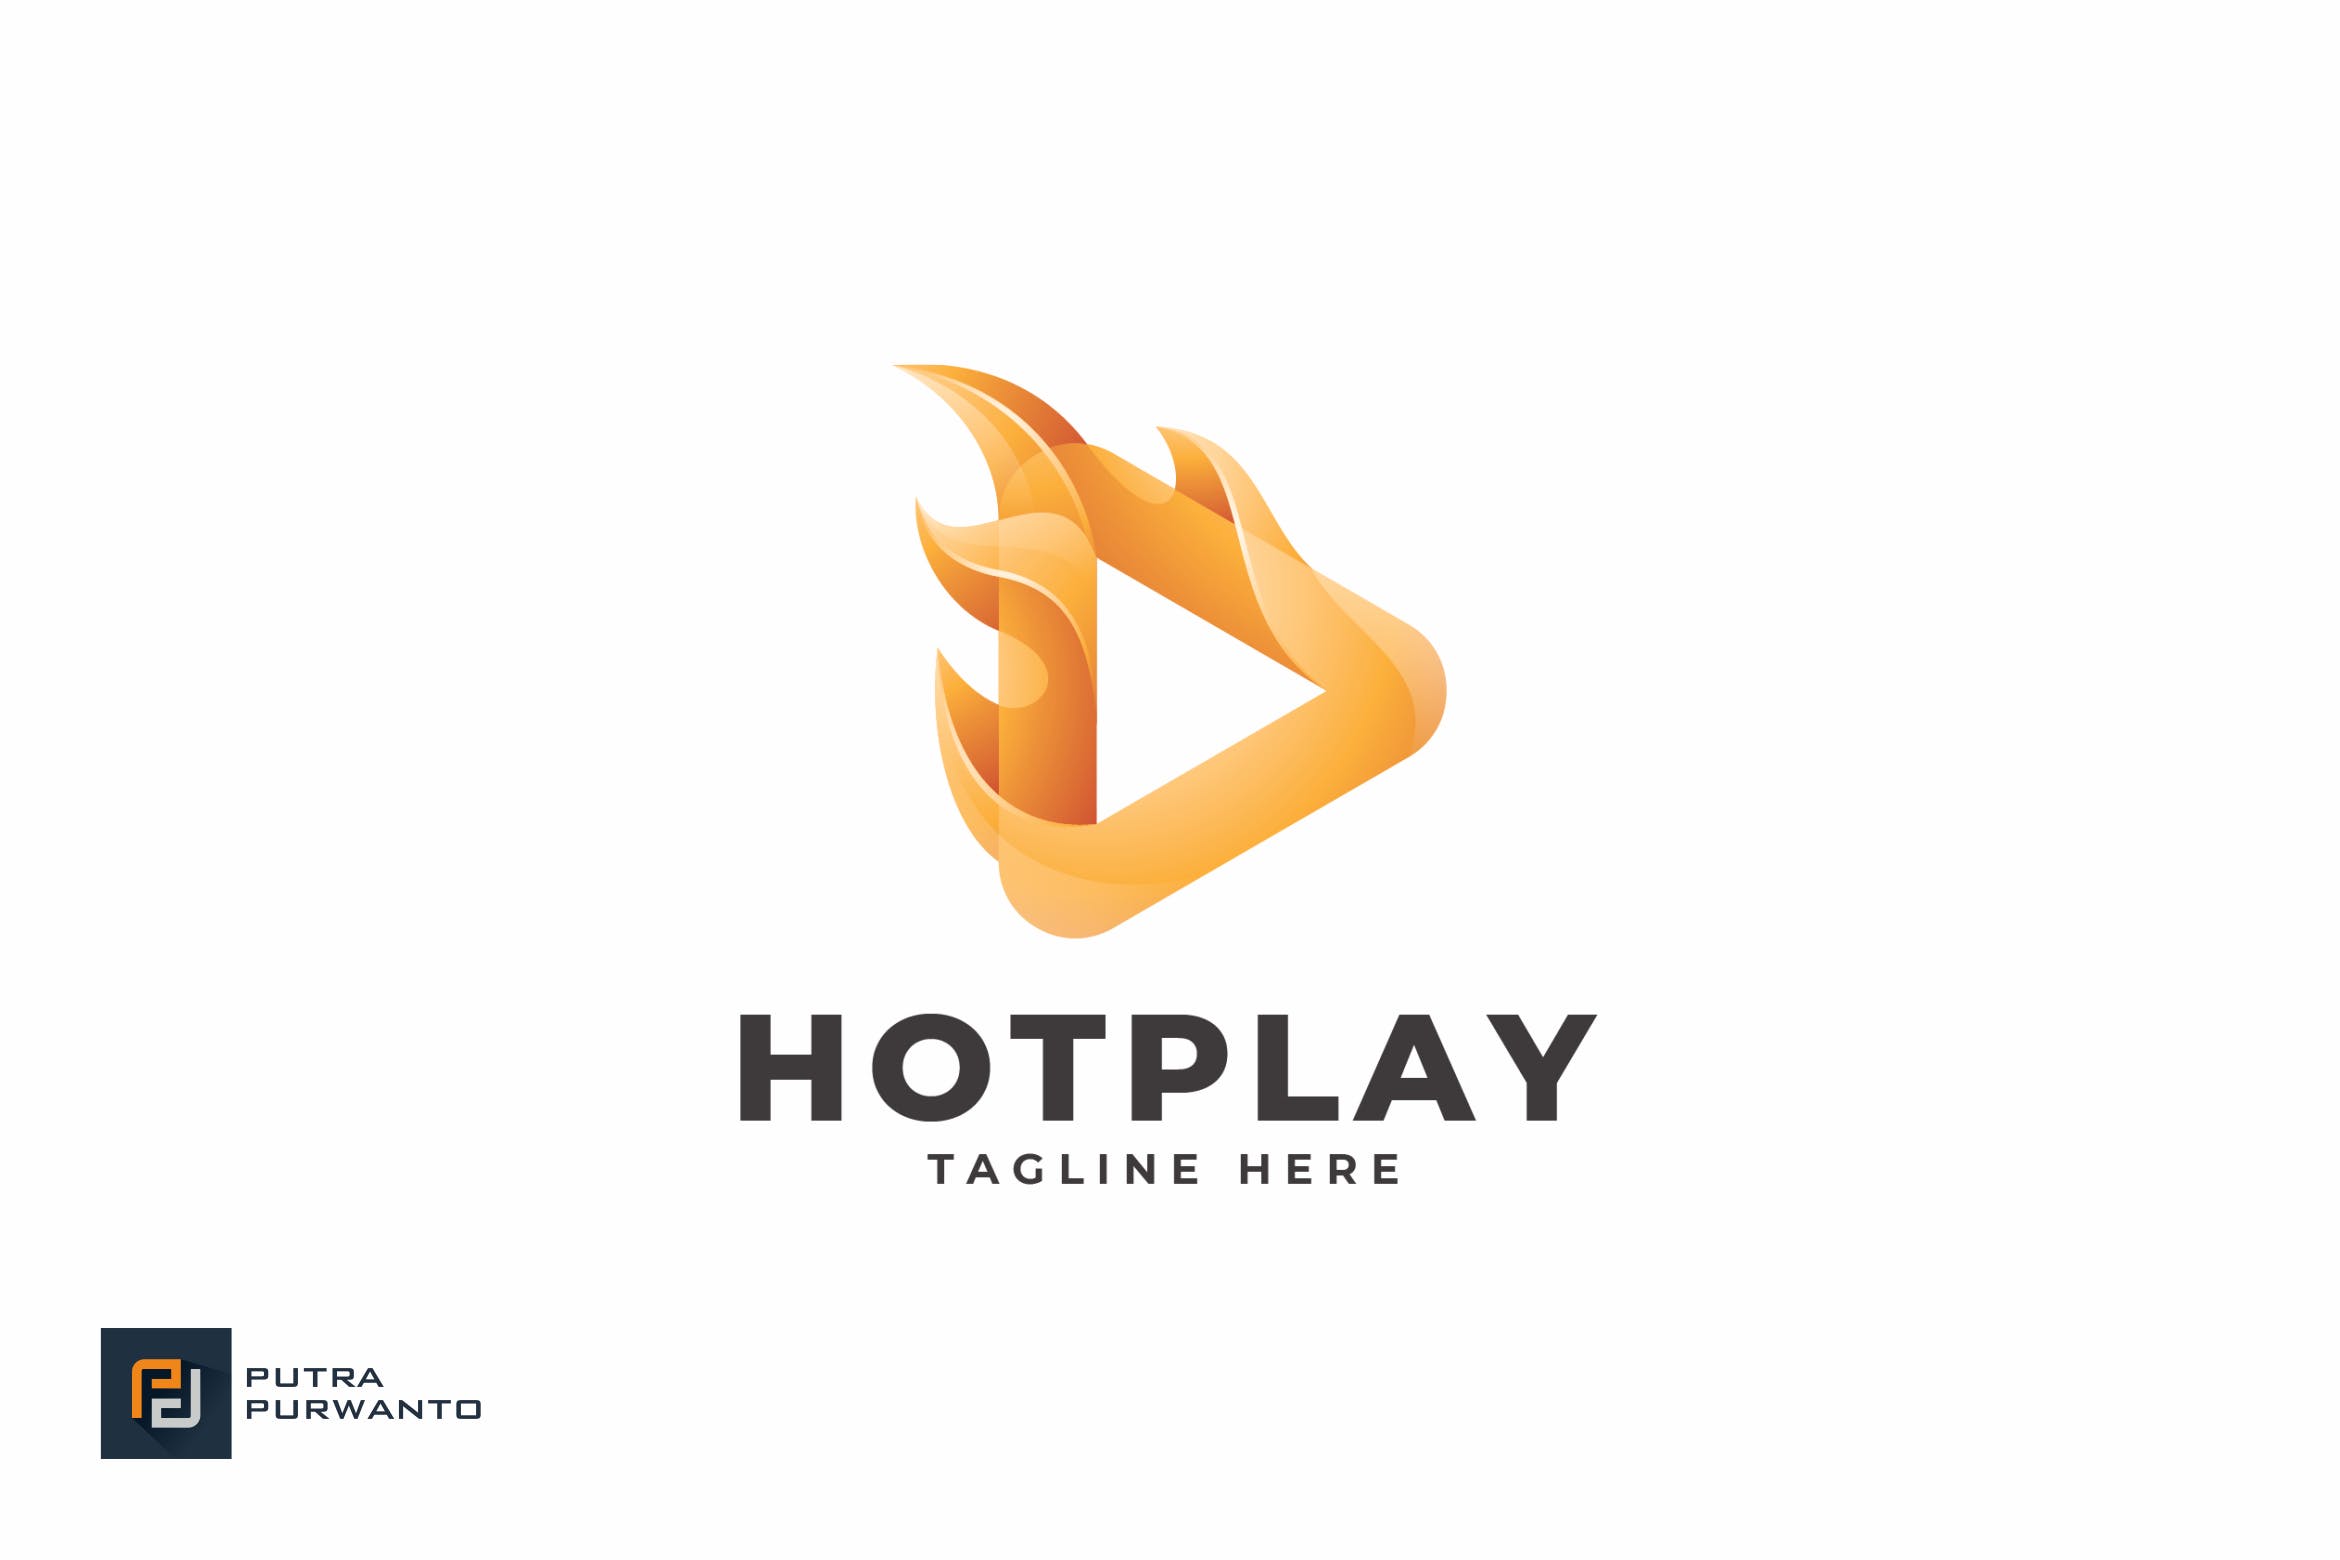 播放器/多媒体品牌Logo设计素材库精选模板 Hot Play – Logo Template插图